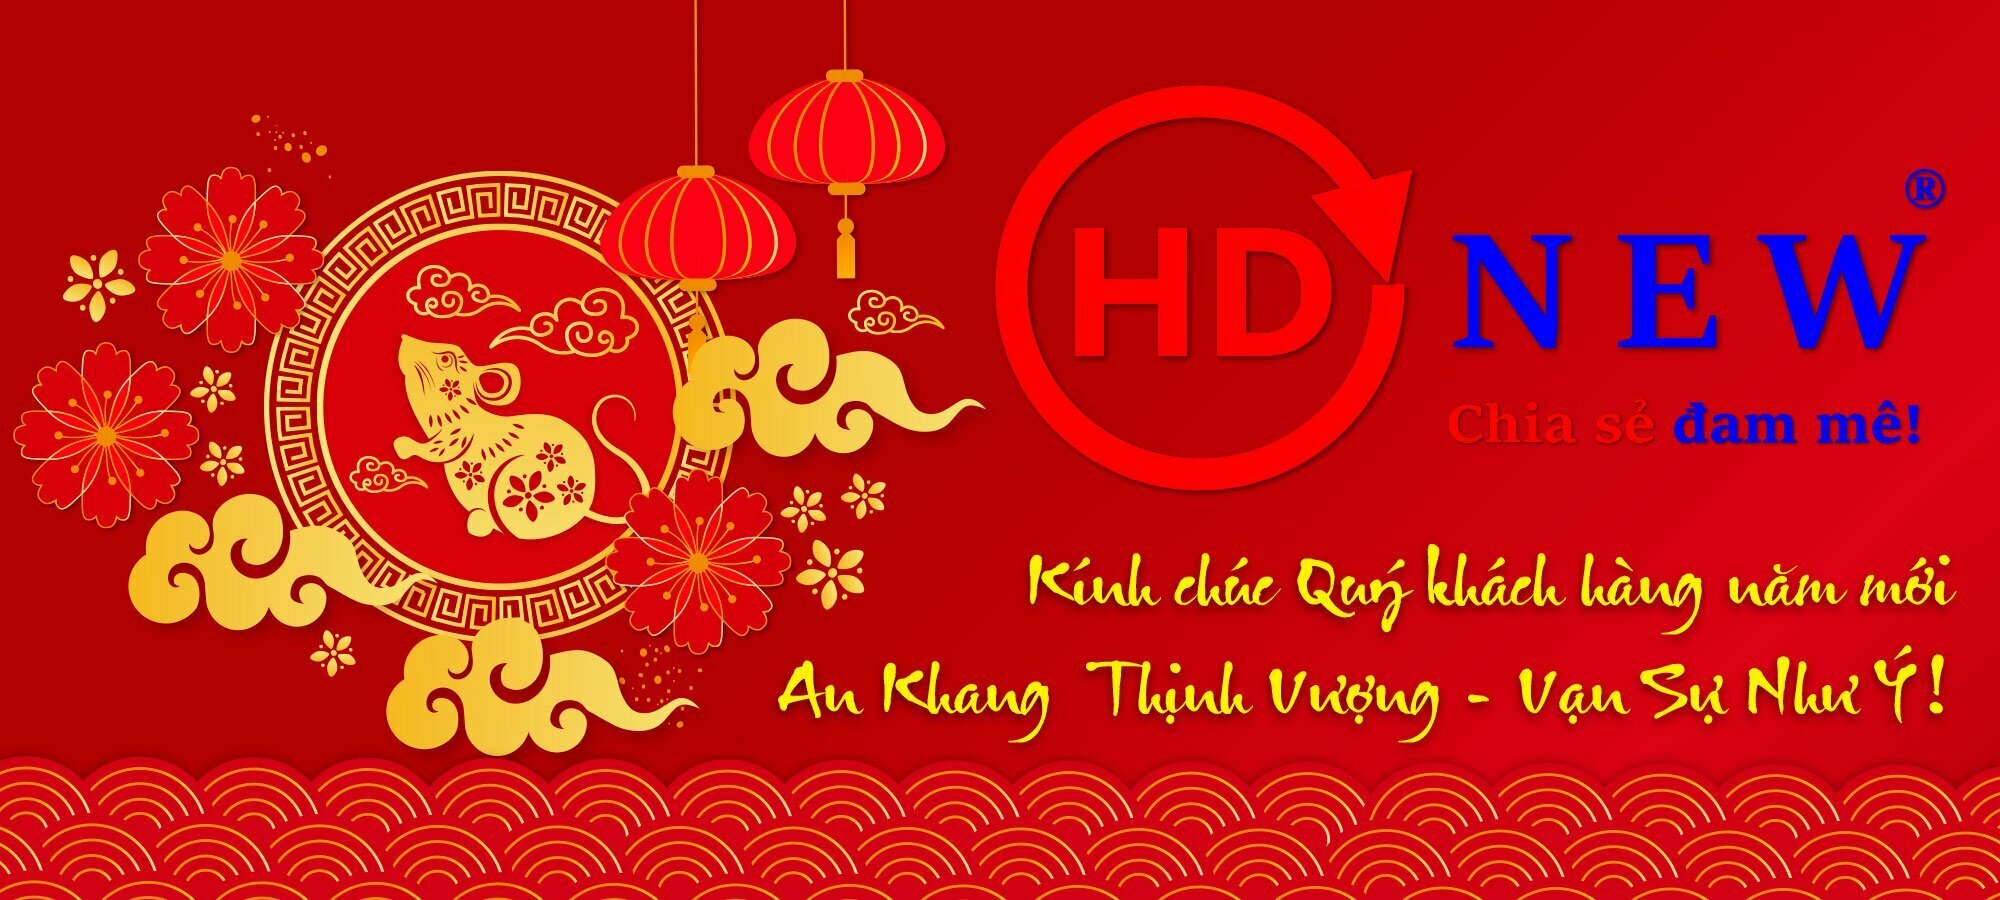 Thông báo lịch nghỉ Tết nguyên đán Canh Tý 2020 | HDnew - Chia sẻ đam mê